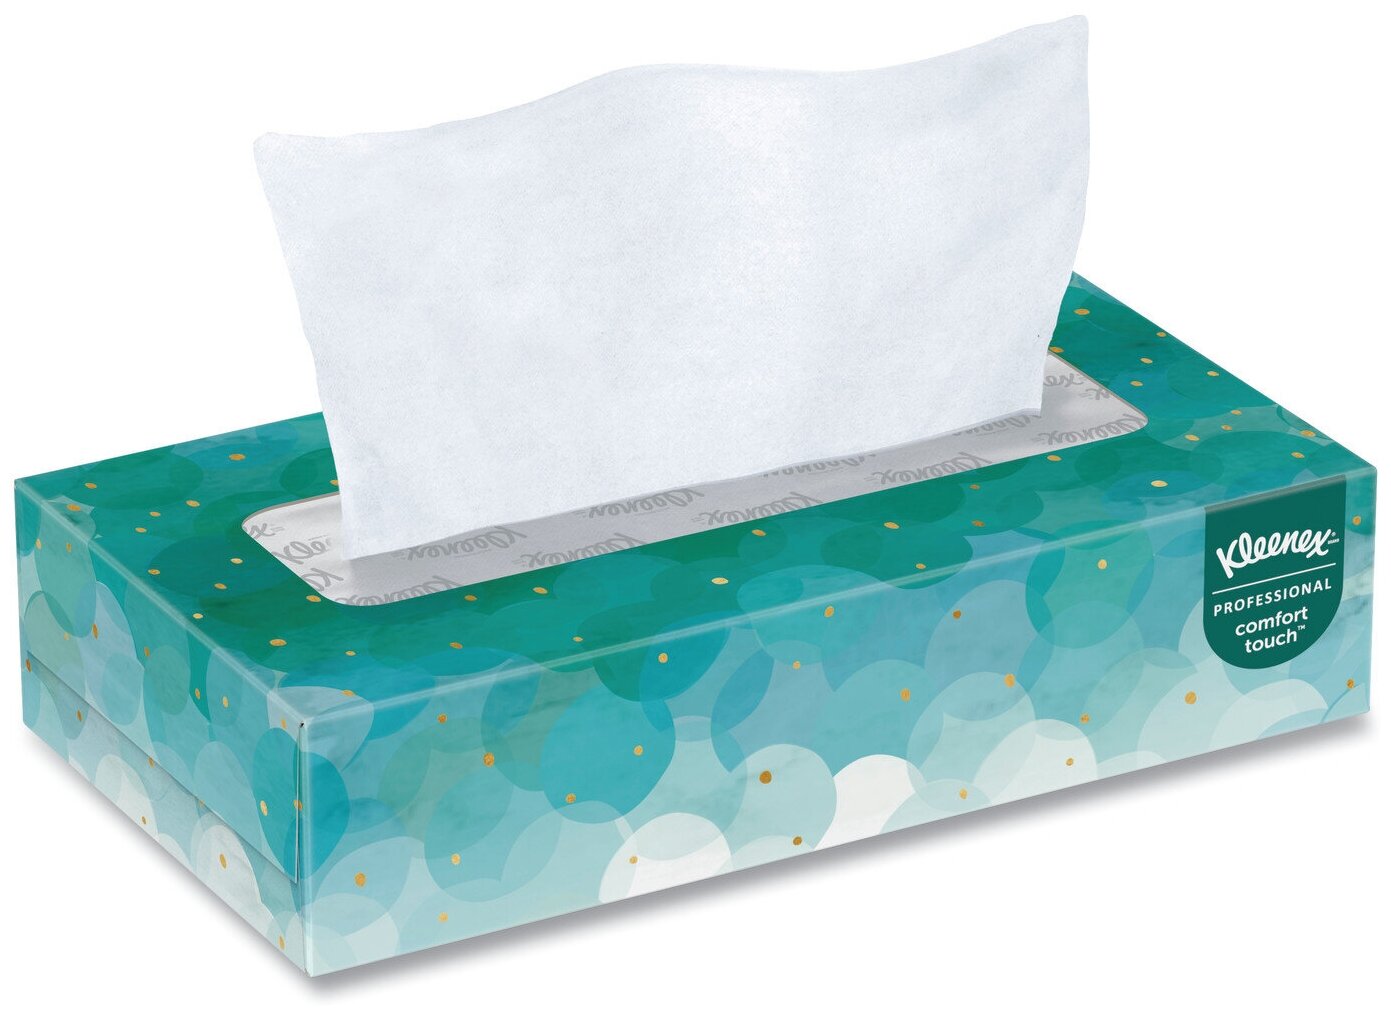 Бумажные салфетки для лица Kleenex, в коробке, 2-сл, 21х19,8 см, 100 шт/уп